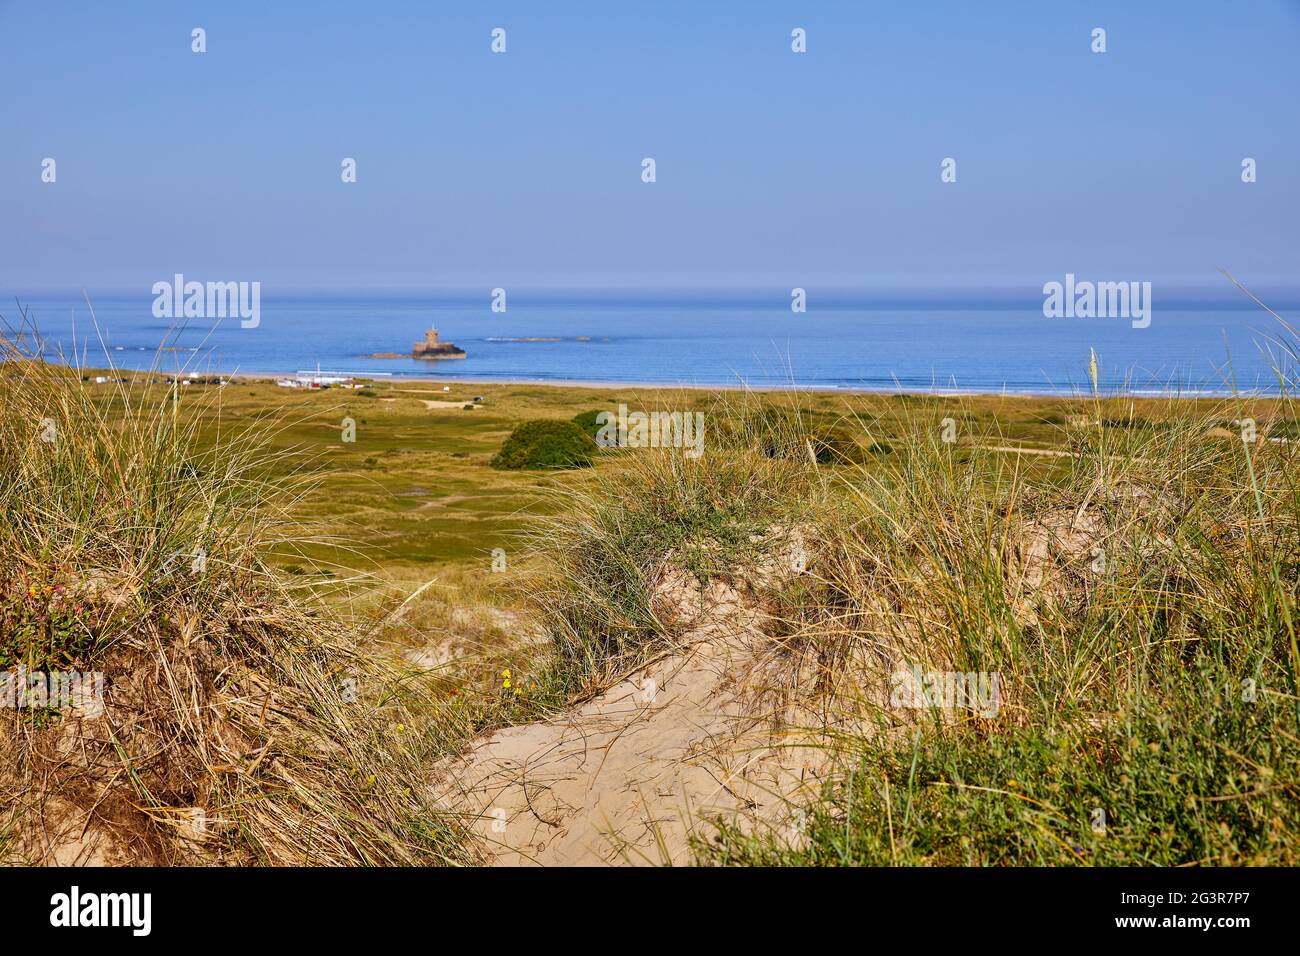 Image de la baie St Ouens depuis les dunes de sable avec la Tour Rocco et le ciel bleu. Mise au point sélective Banque D'Images